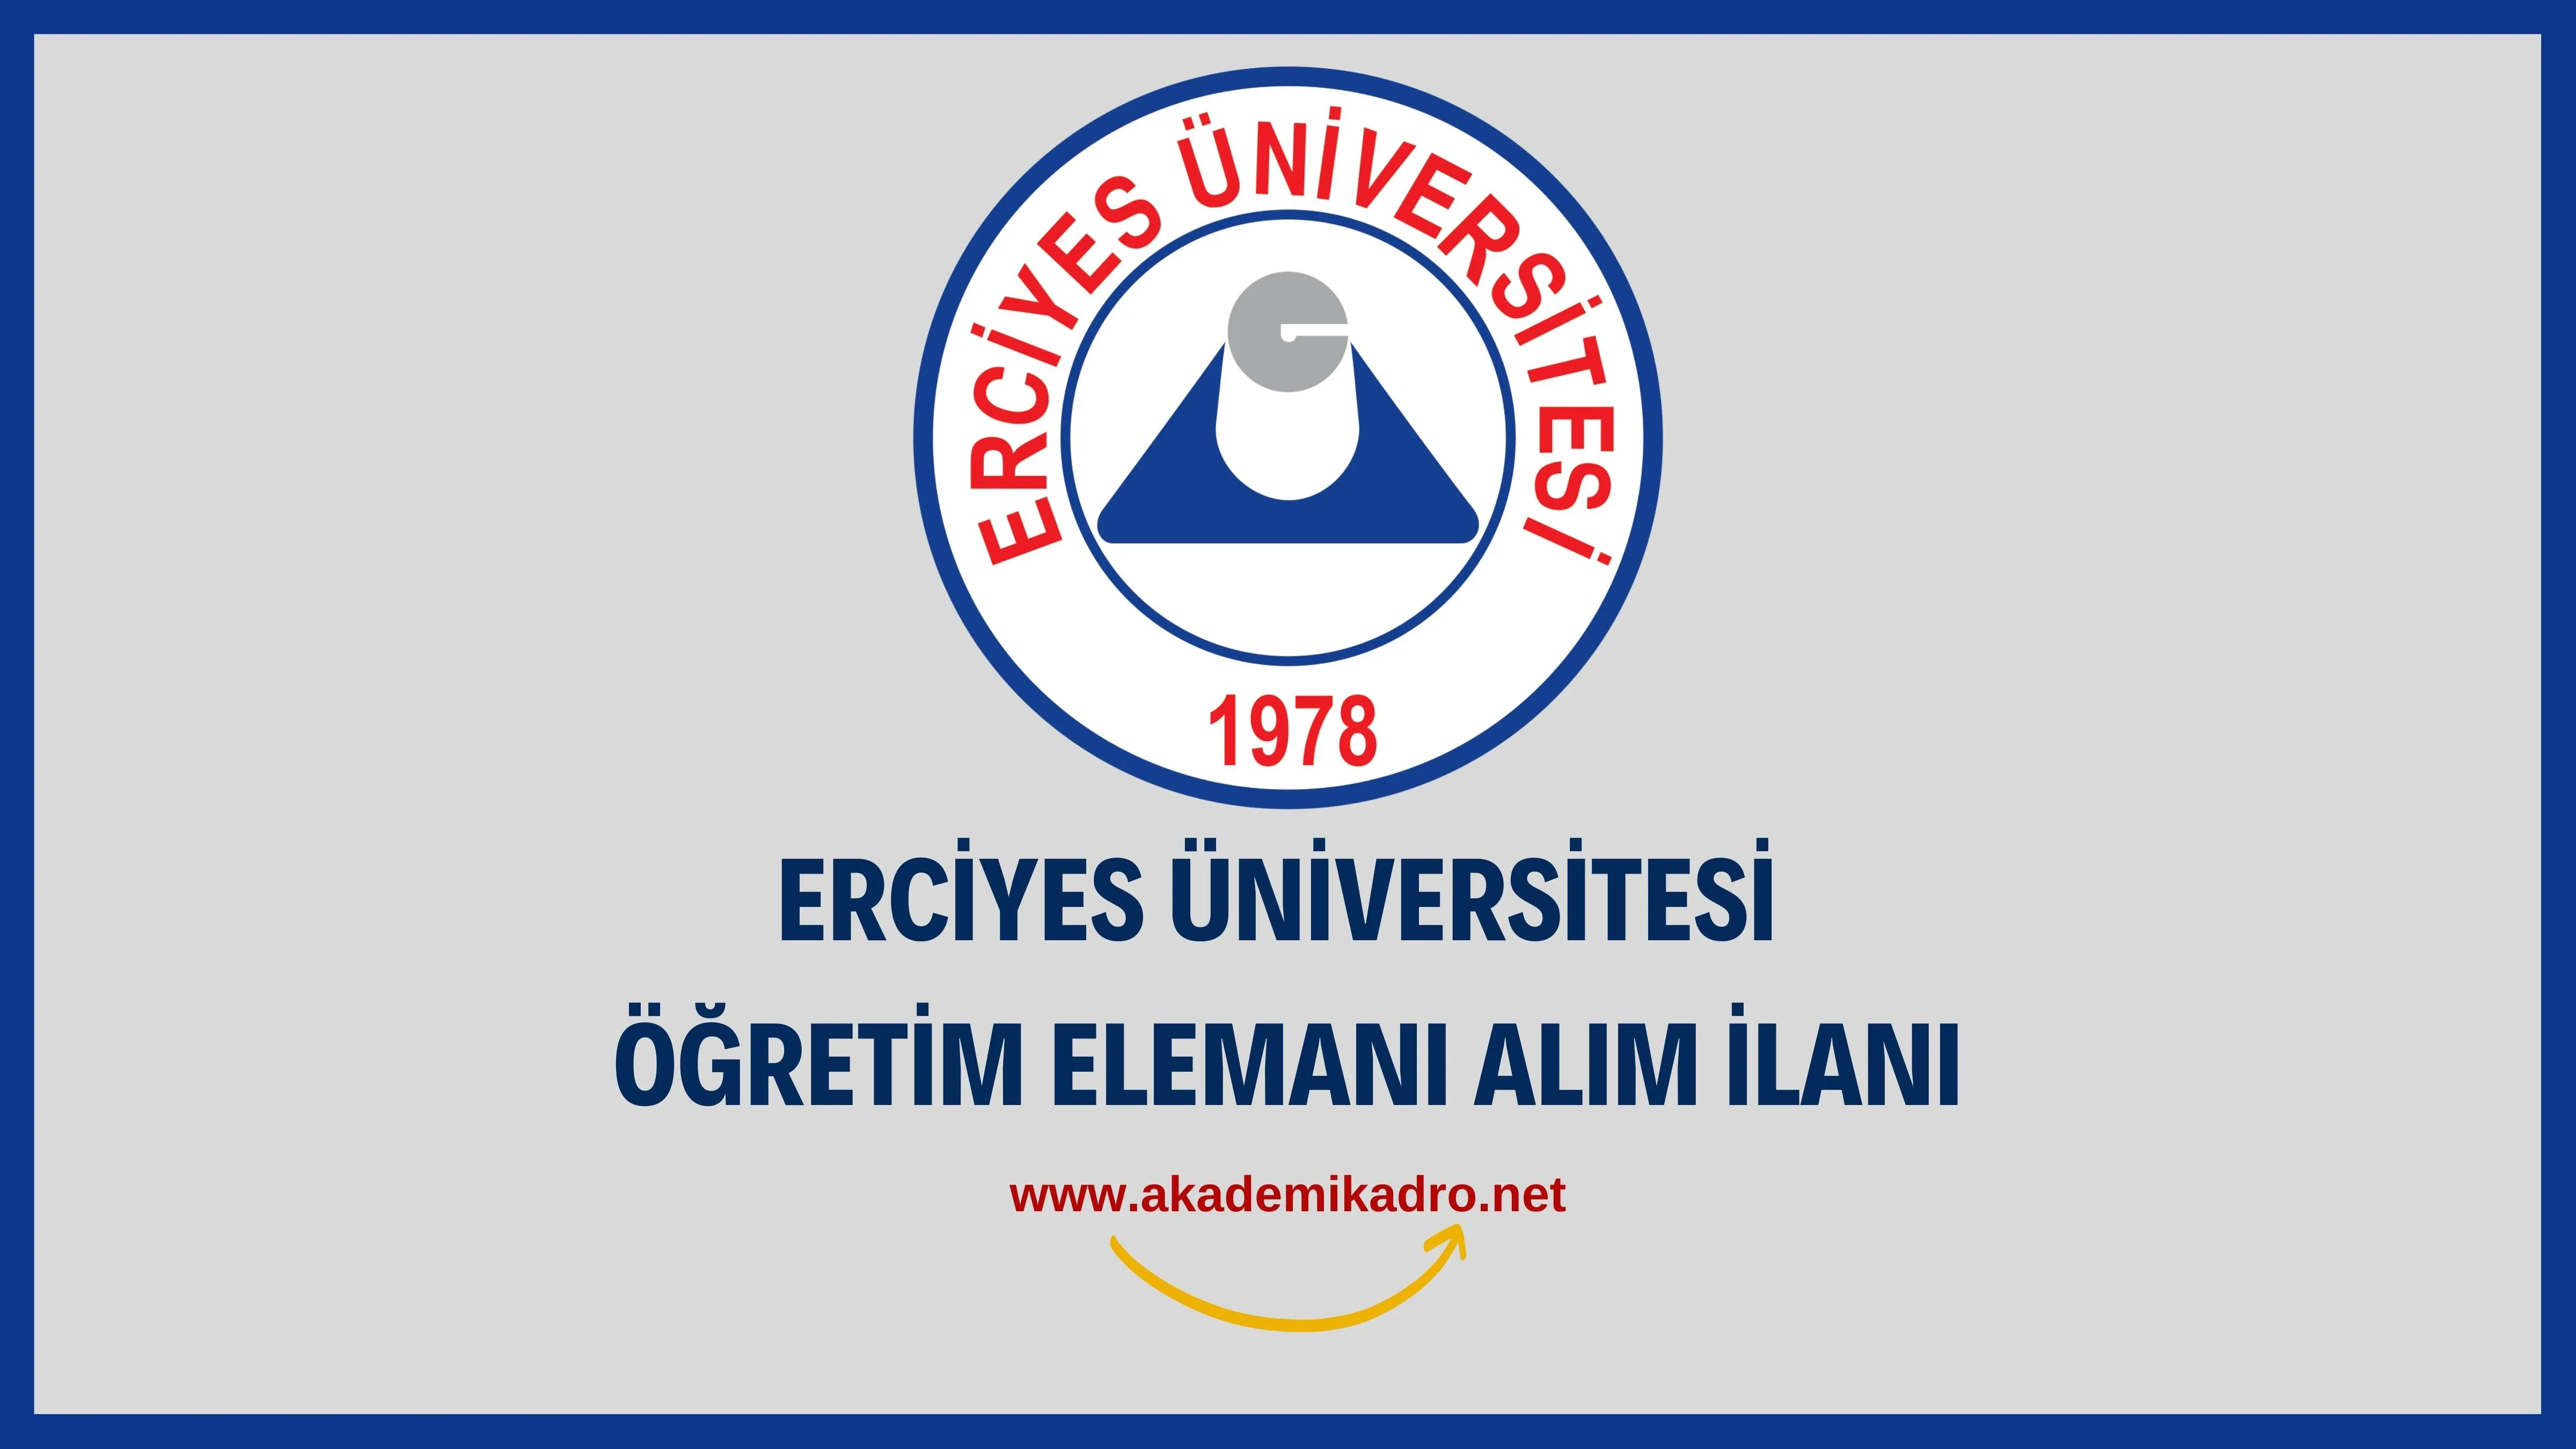 Erciyes Üniversitesi 6 Öğretim görevlisi ve birçok alandan 63 Öğretim üyesi alacak.